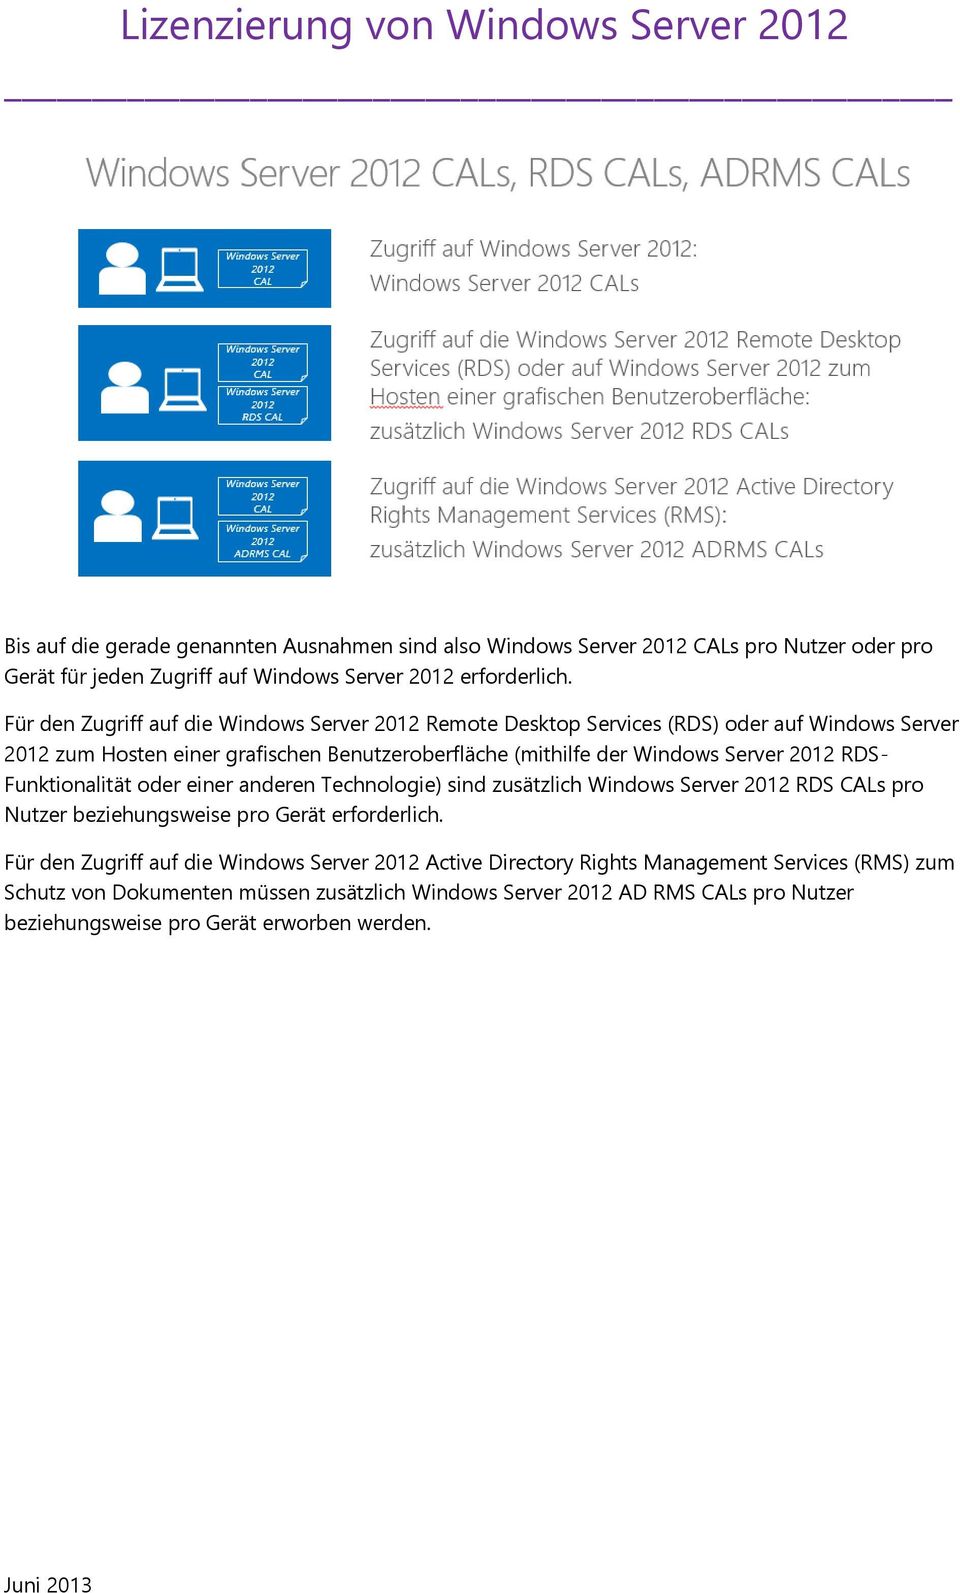 Server 2012 RDS- Funktionalität oder einer anderen Technologie) sind zusätzlich Windows Server 2012 RDS CALs pro Nutzer beziehungsweise pro Gerät erforderlich.